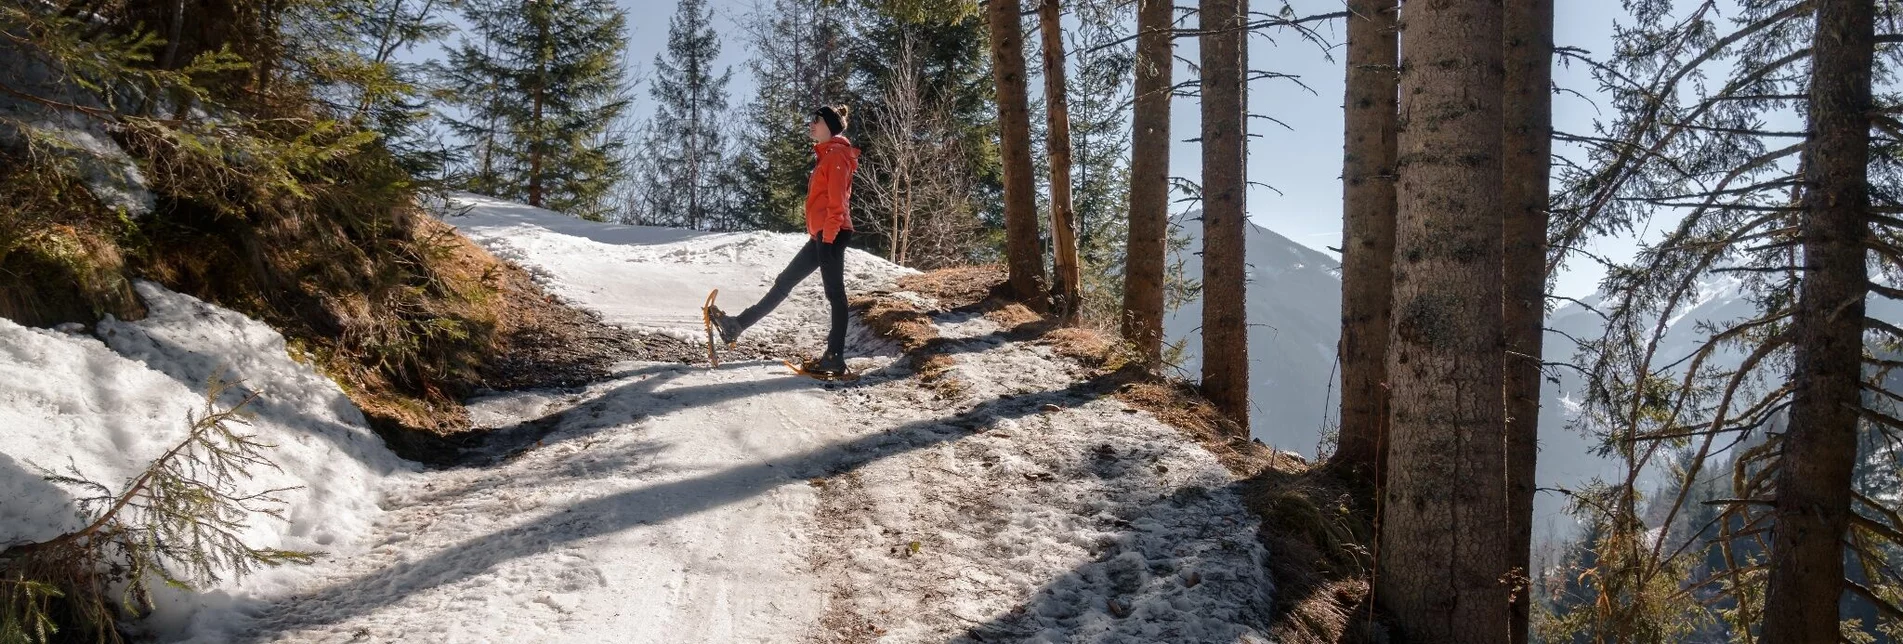 Winter Hiking Schönwetterhütte: Snowshoe & winter hike - Touren-Impression #1 | © Erlebnisregion Schladming-Dachstein